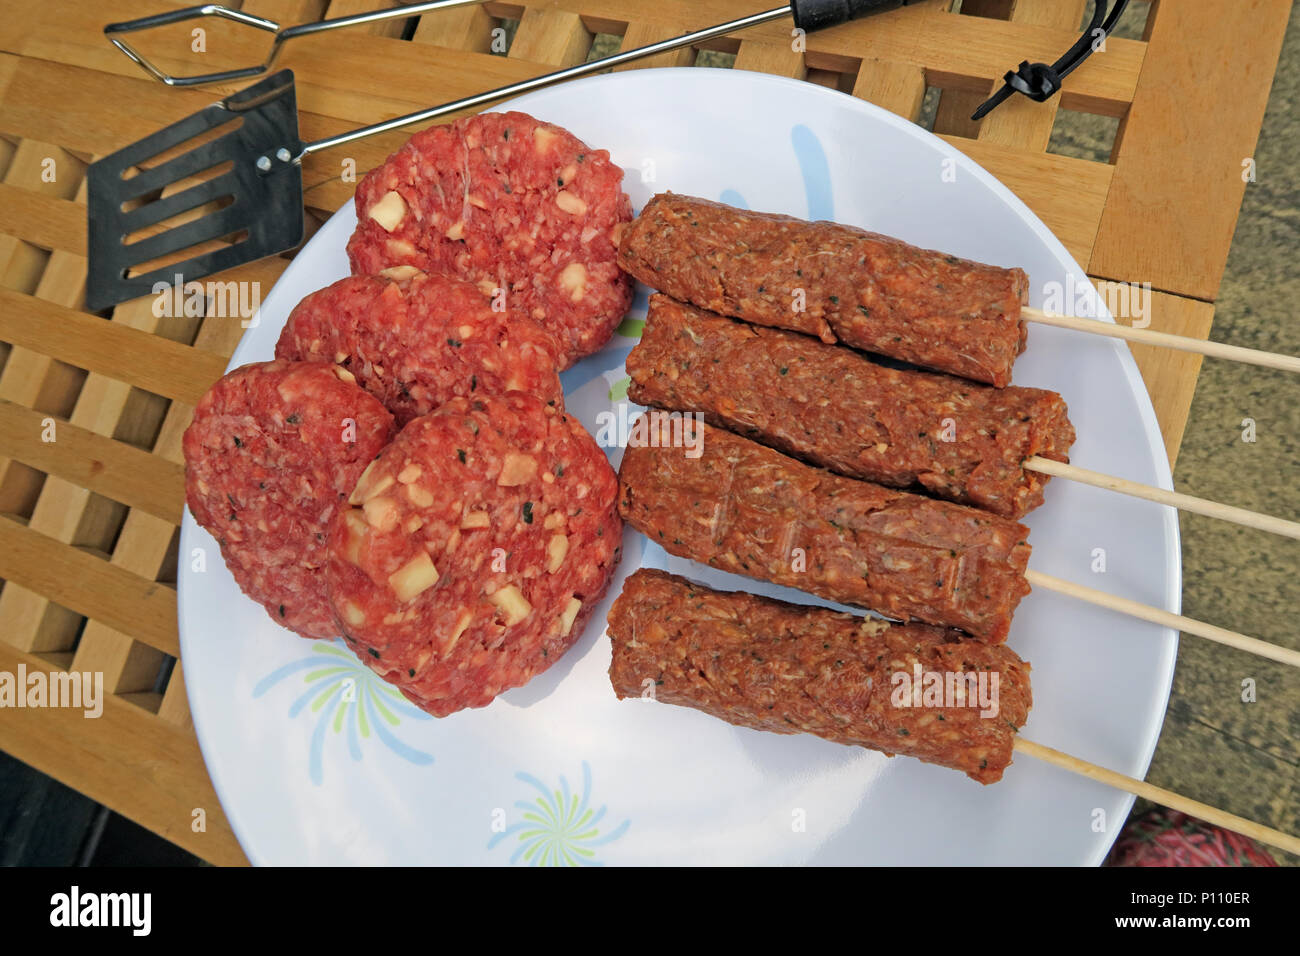 Gefahren der Lebensmittelvergiftung von Sommer BBQ-Fleisch, Wurst,  Rindfleisch Burger, Döner, gekocht oder roh Stockfotografie - Alamy